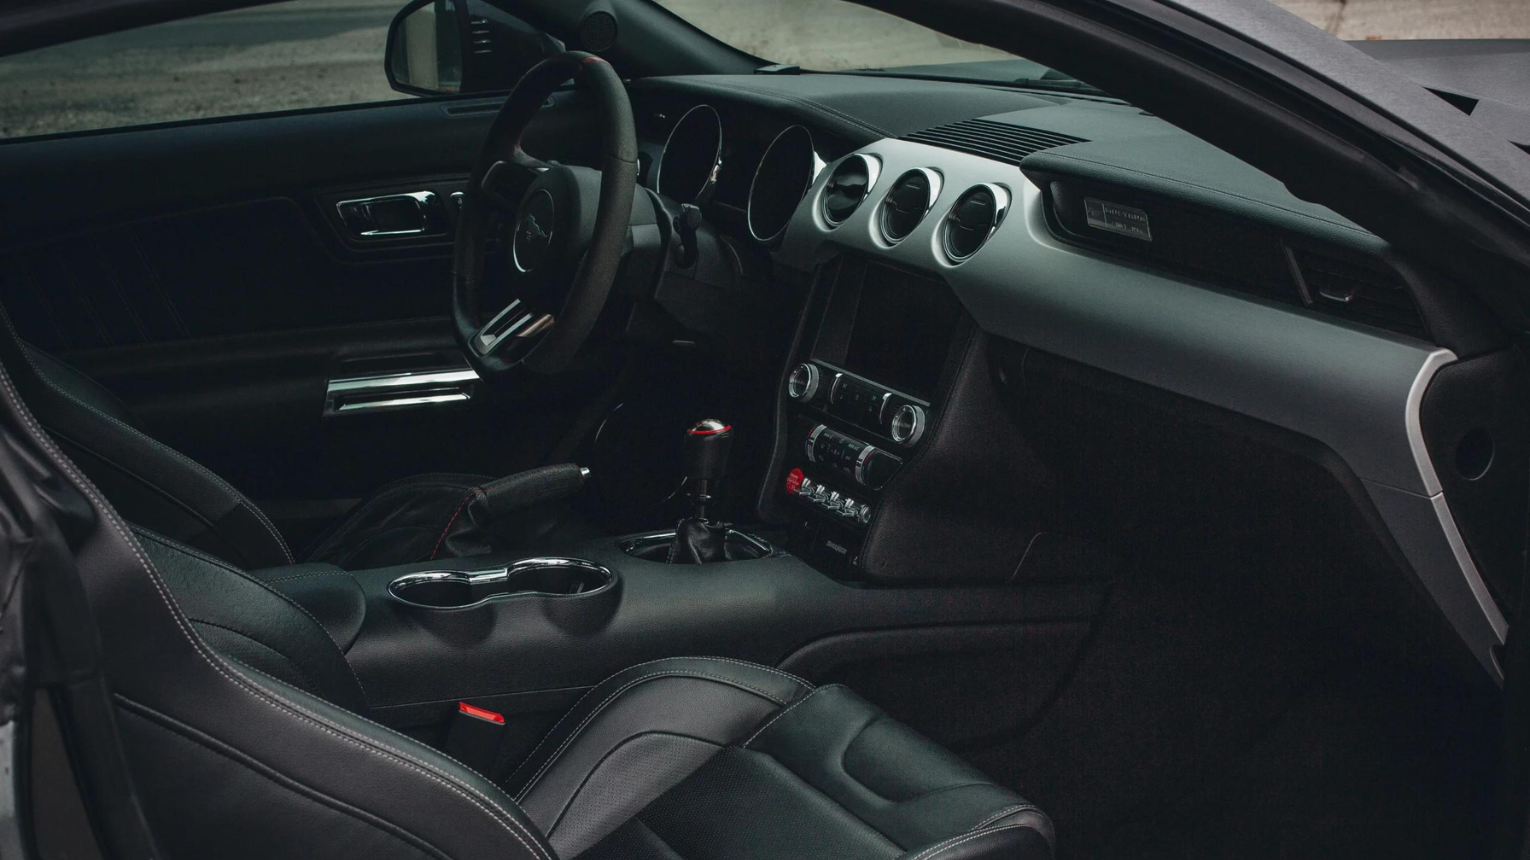 Utca élményvezetés egy 2016-os Ford Mustang GT kompresszorral